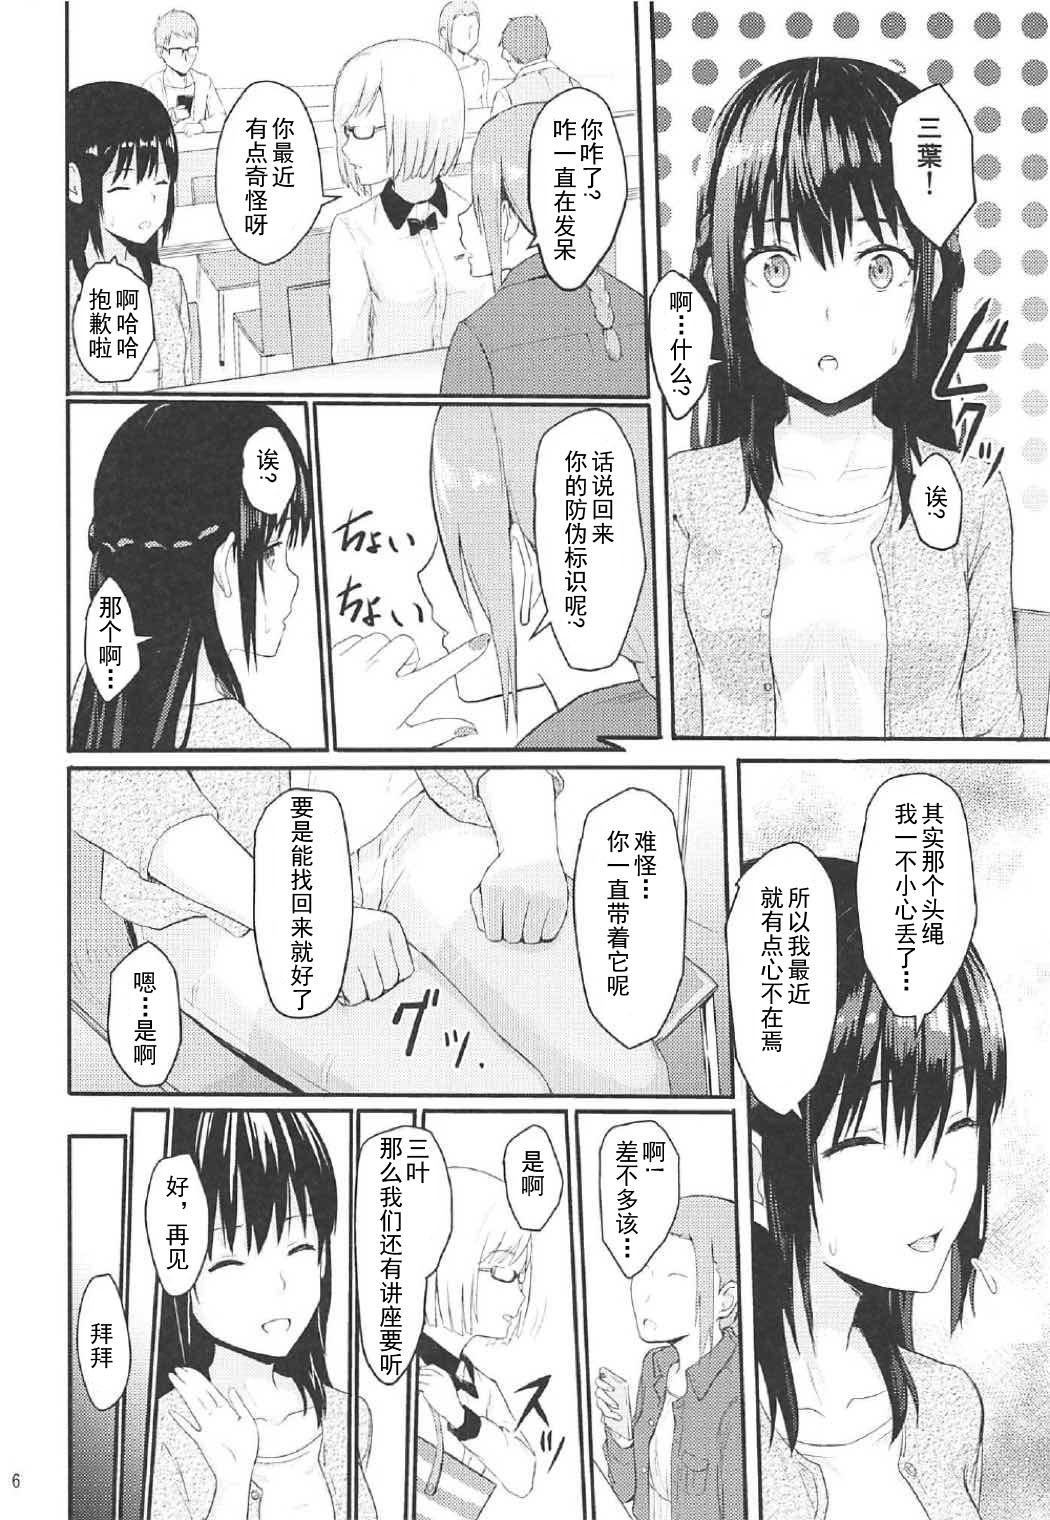 Hardsex Mitsuha - Kimi no na wa. Lick - Page 5